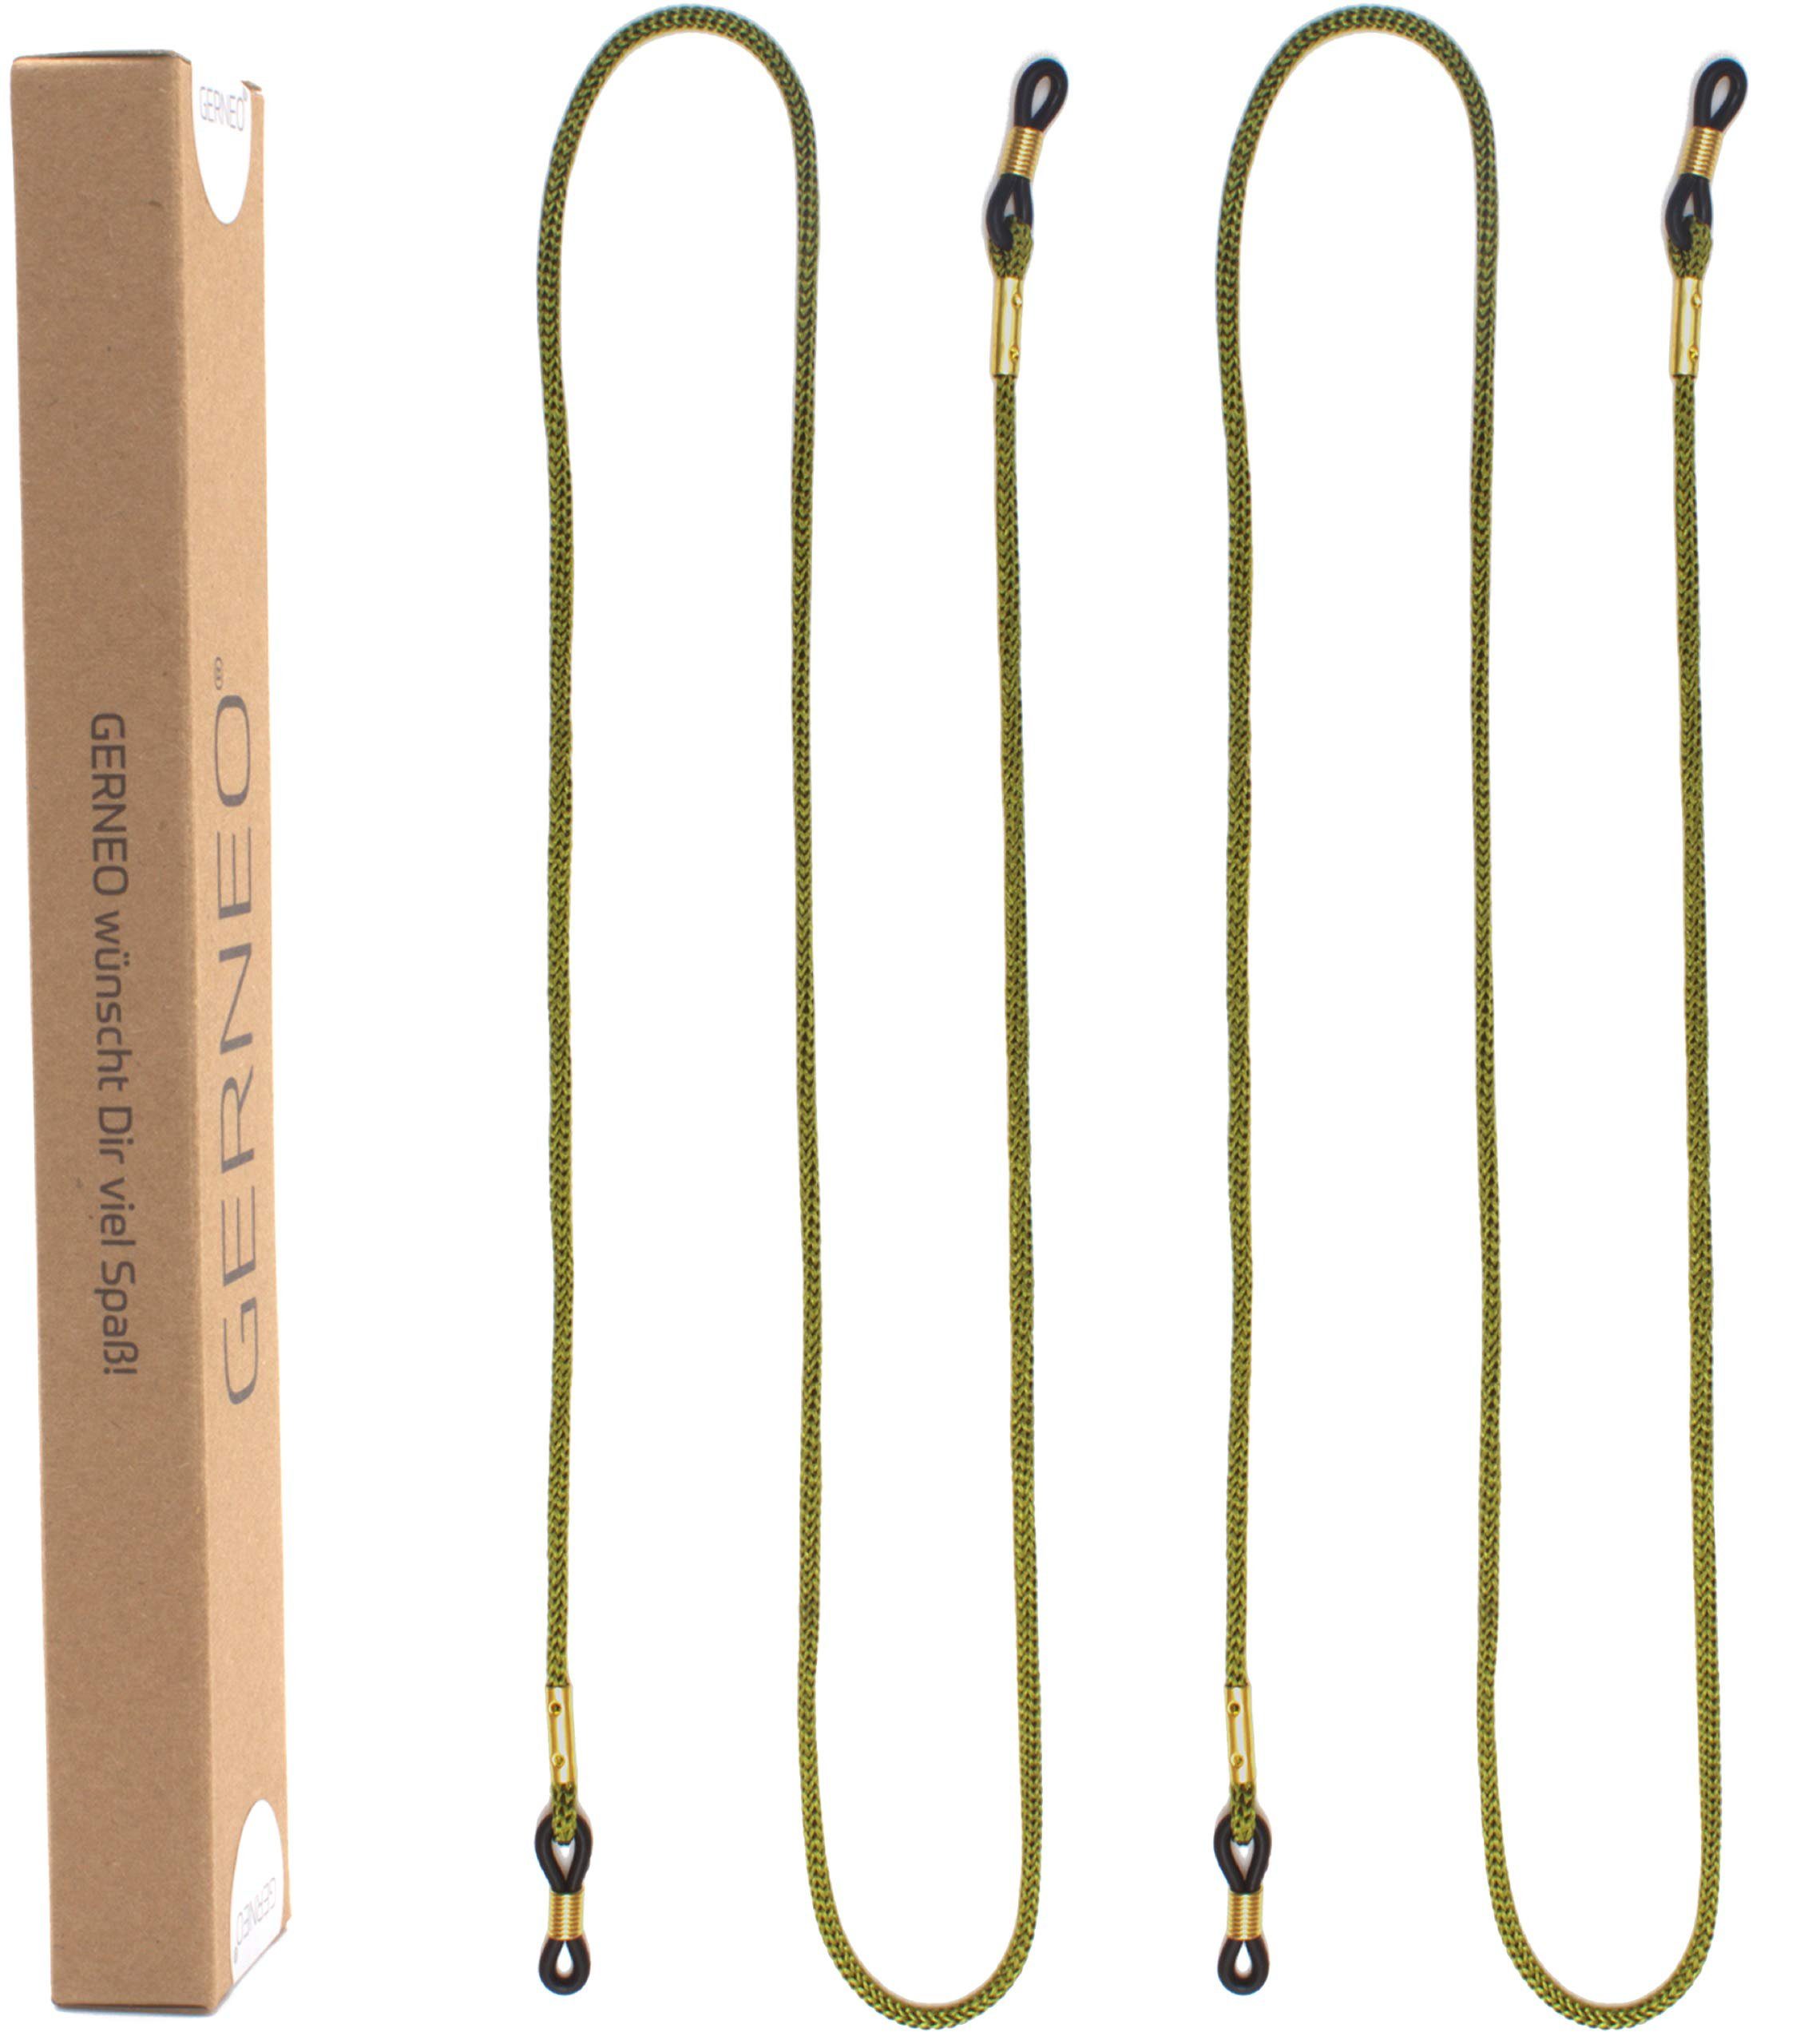 GERNEO Brillenband GERNEO® - London – hochwertiges Brillenband aus Stoff, Unisex Brillenkordel für Sonnenbrillen & Lesebrillen – diverse Farben 2x-Grün